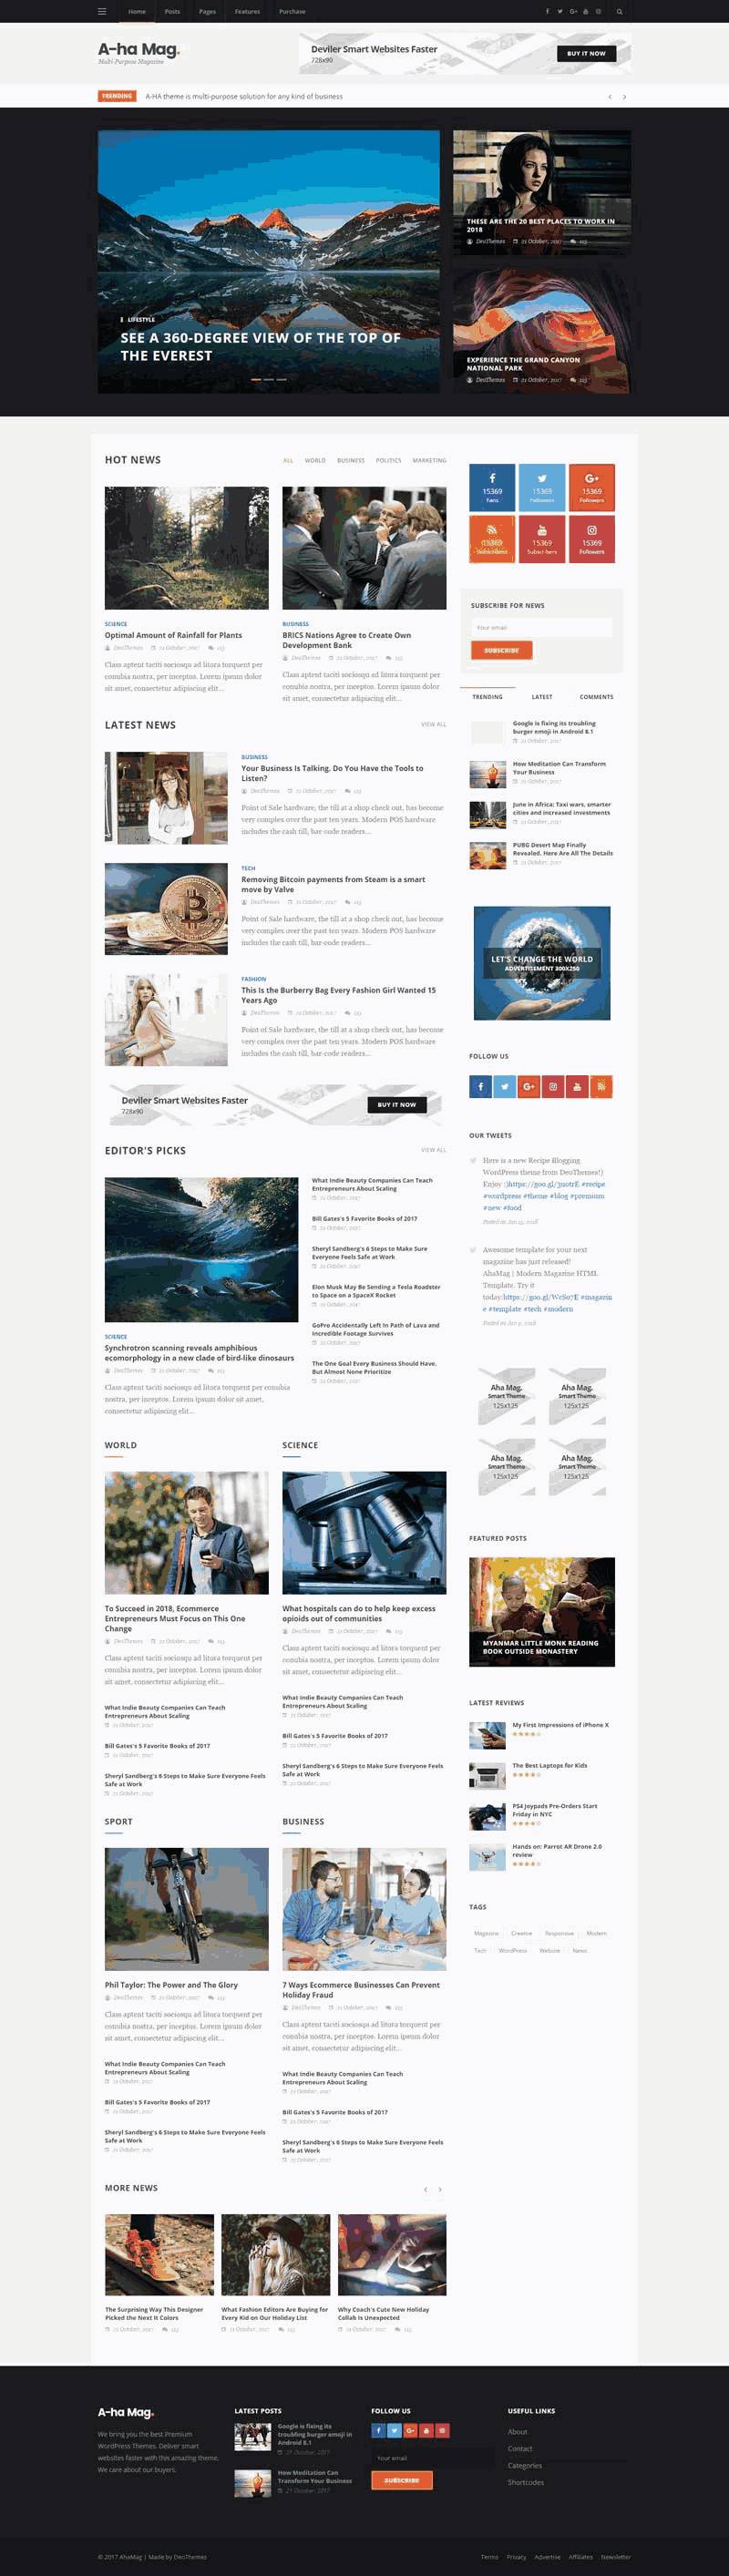 黑色新闻资讯图片博客Wordpress模板主题